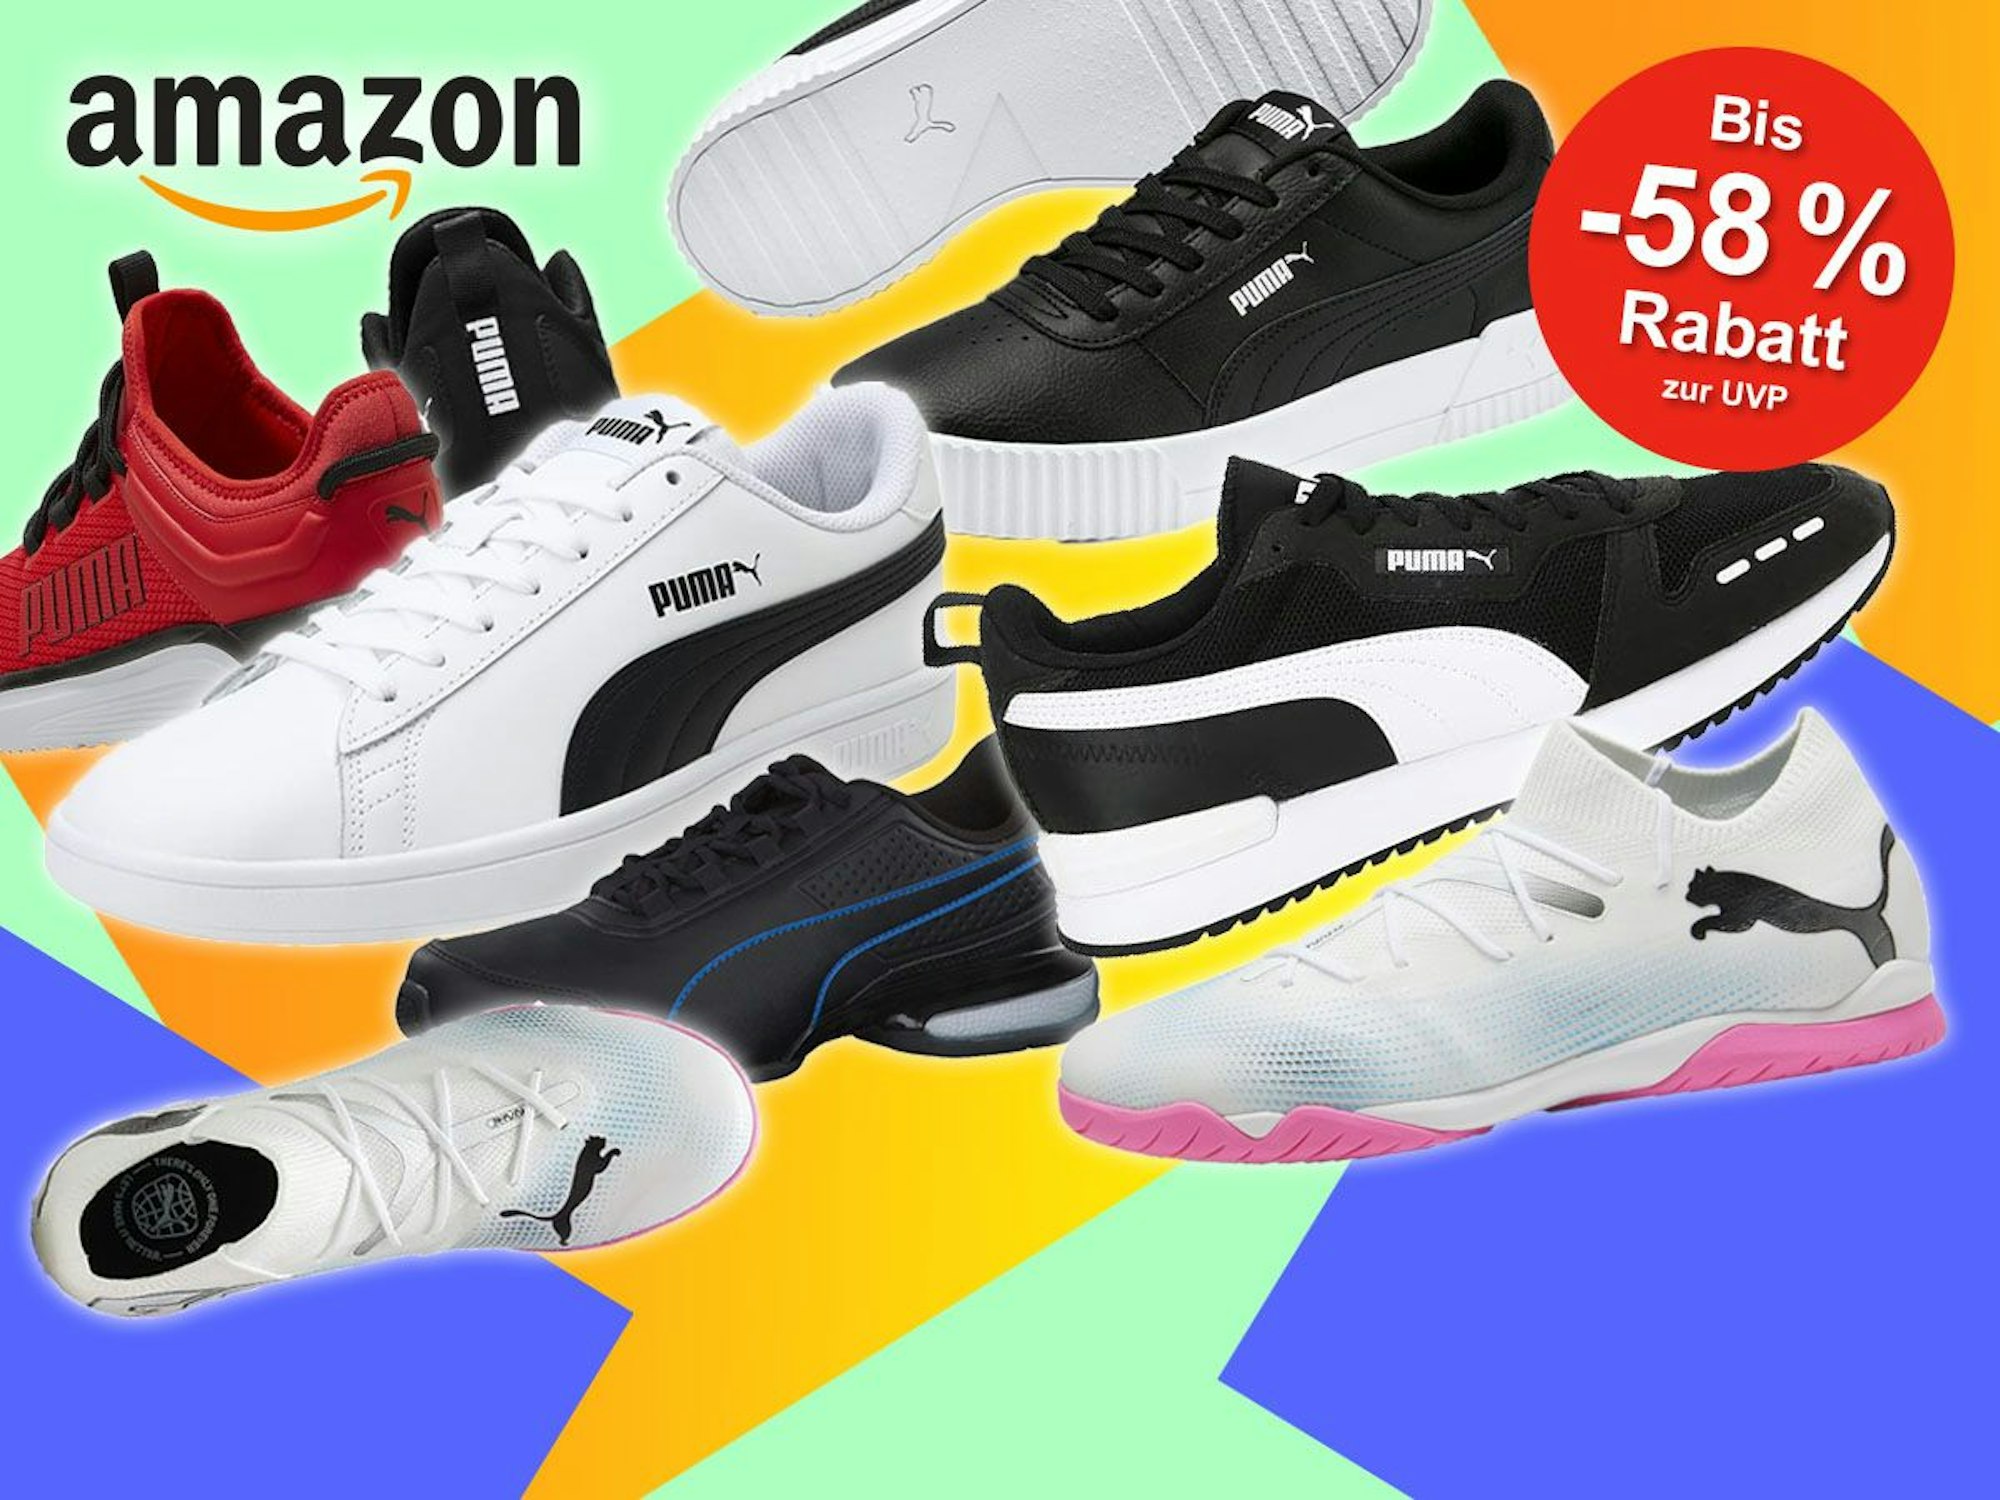 Mehrere Modelle von Puma Schuhen: Sneaker, Laufschuhe und Sportschuhe vor einem bunten Hintergrund.